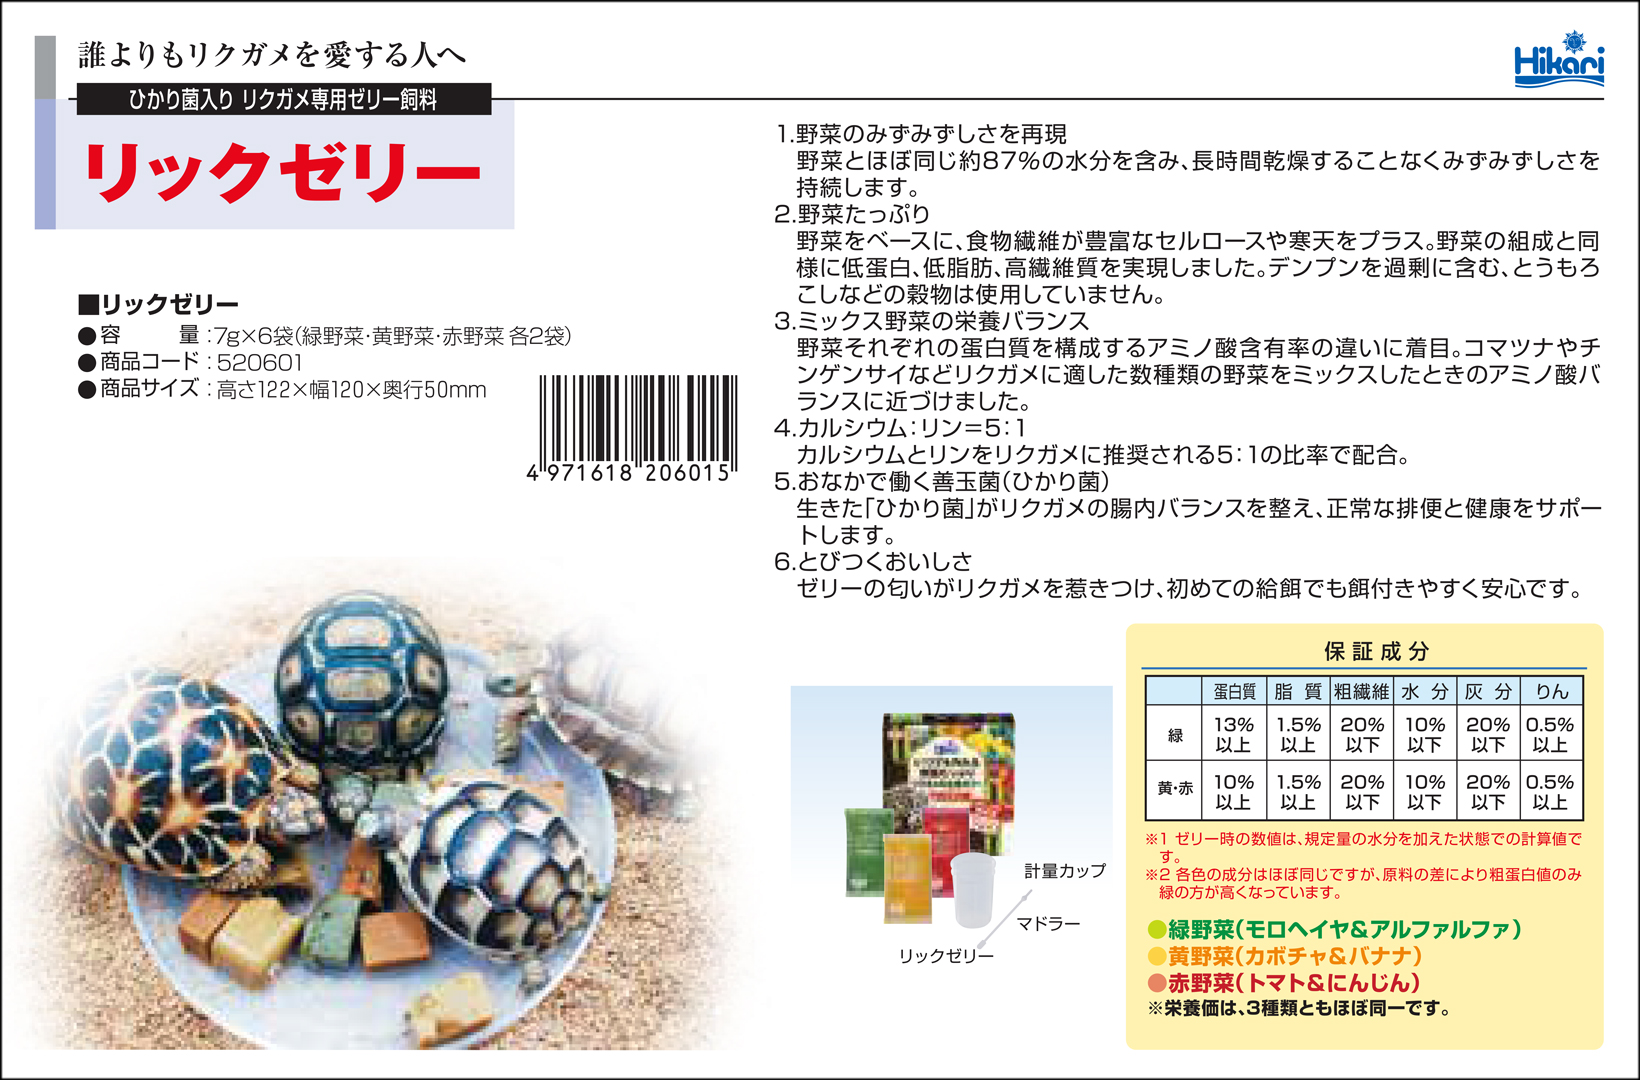 リックゼリー7g×6袋(全42g) キョーリン ひかり 陸亀の餌 販売 通販